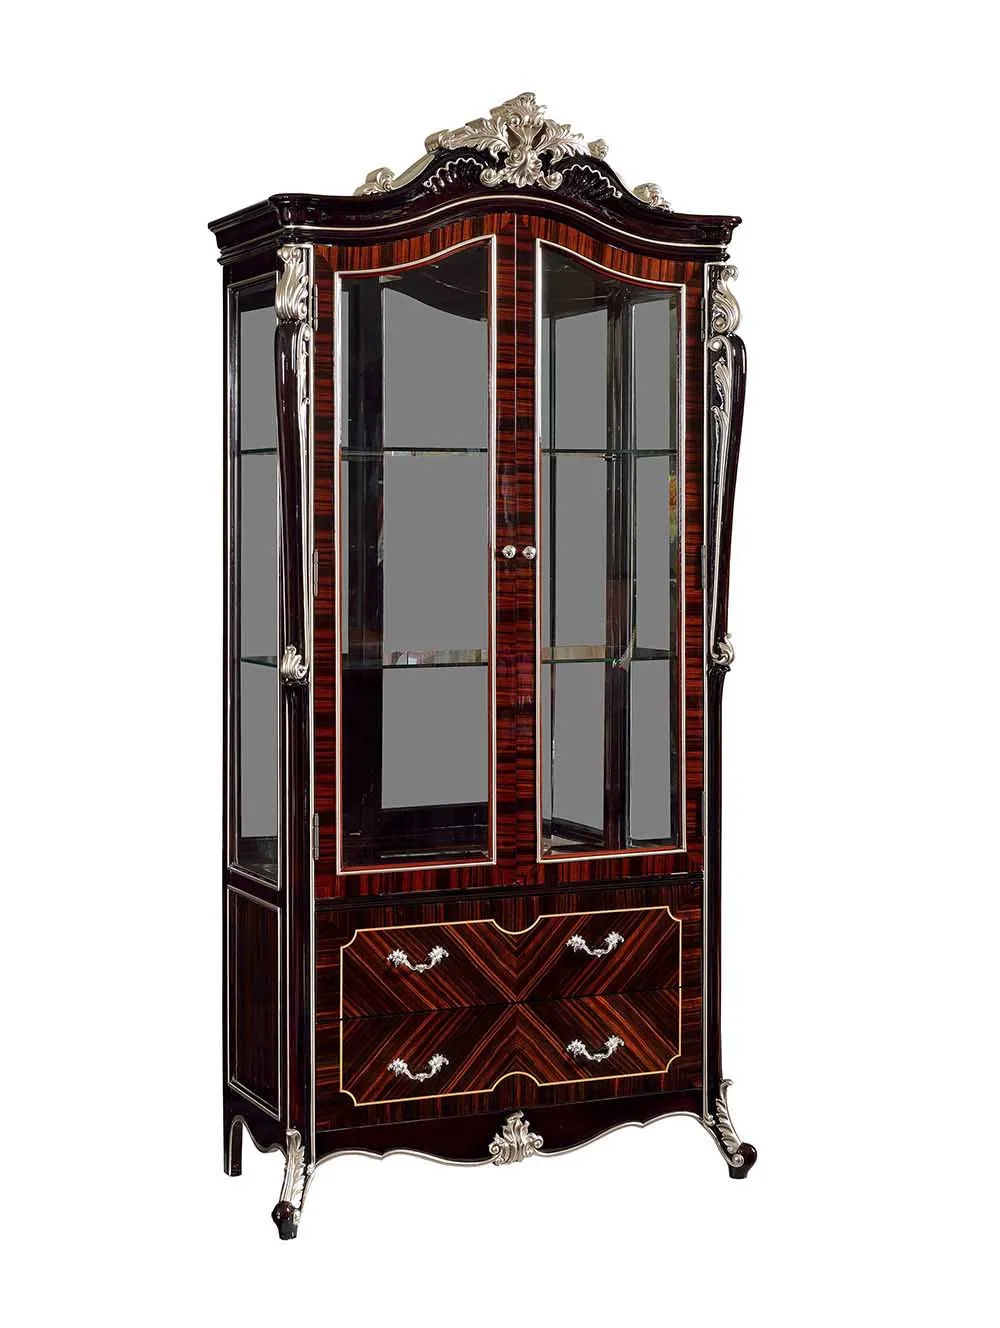 Classic Wine Cabinet 2 Glass Doors Display Wooden Cabinet Buy